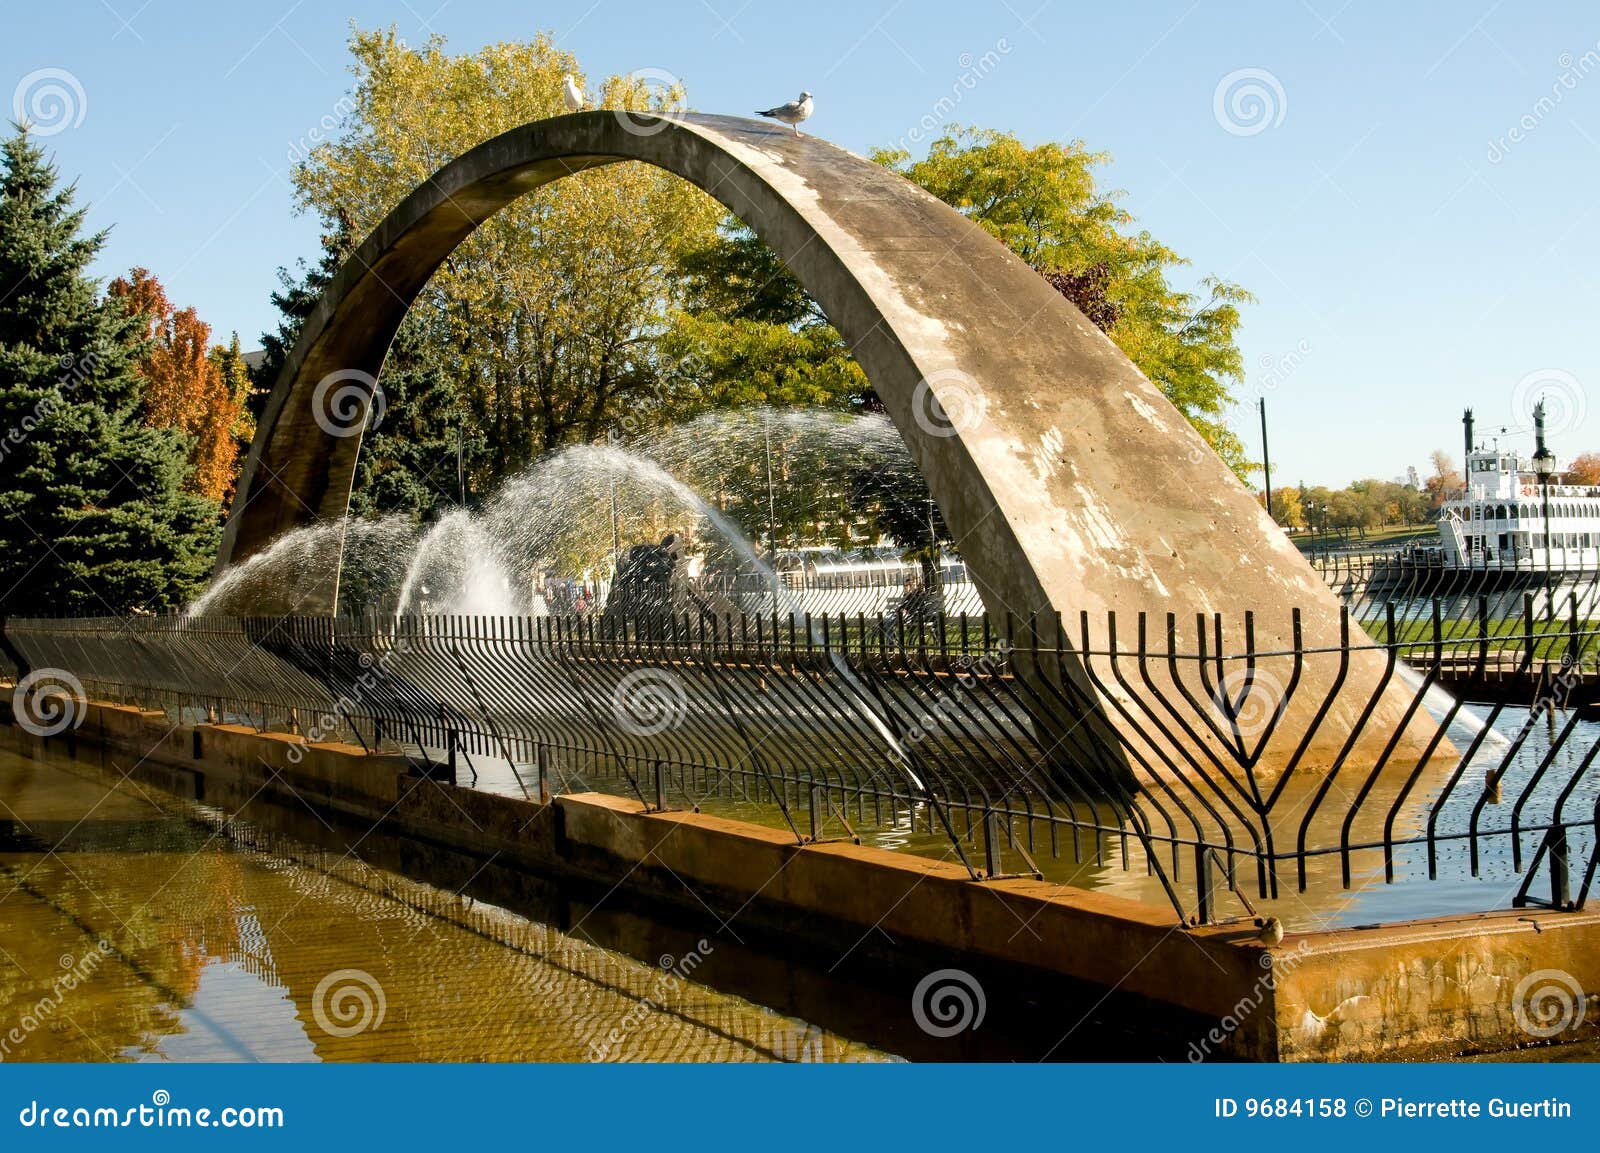 confederation arch fountain